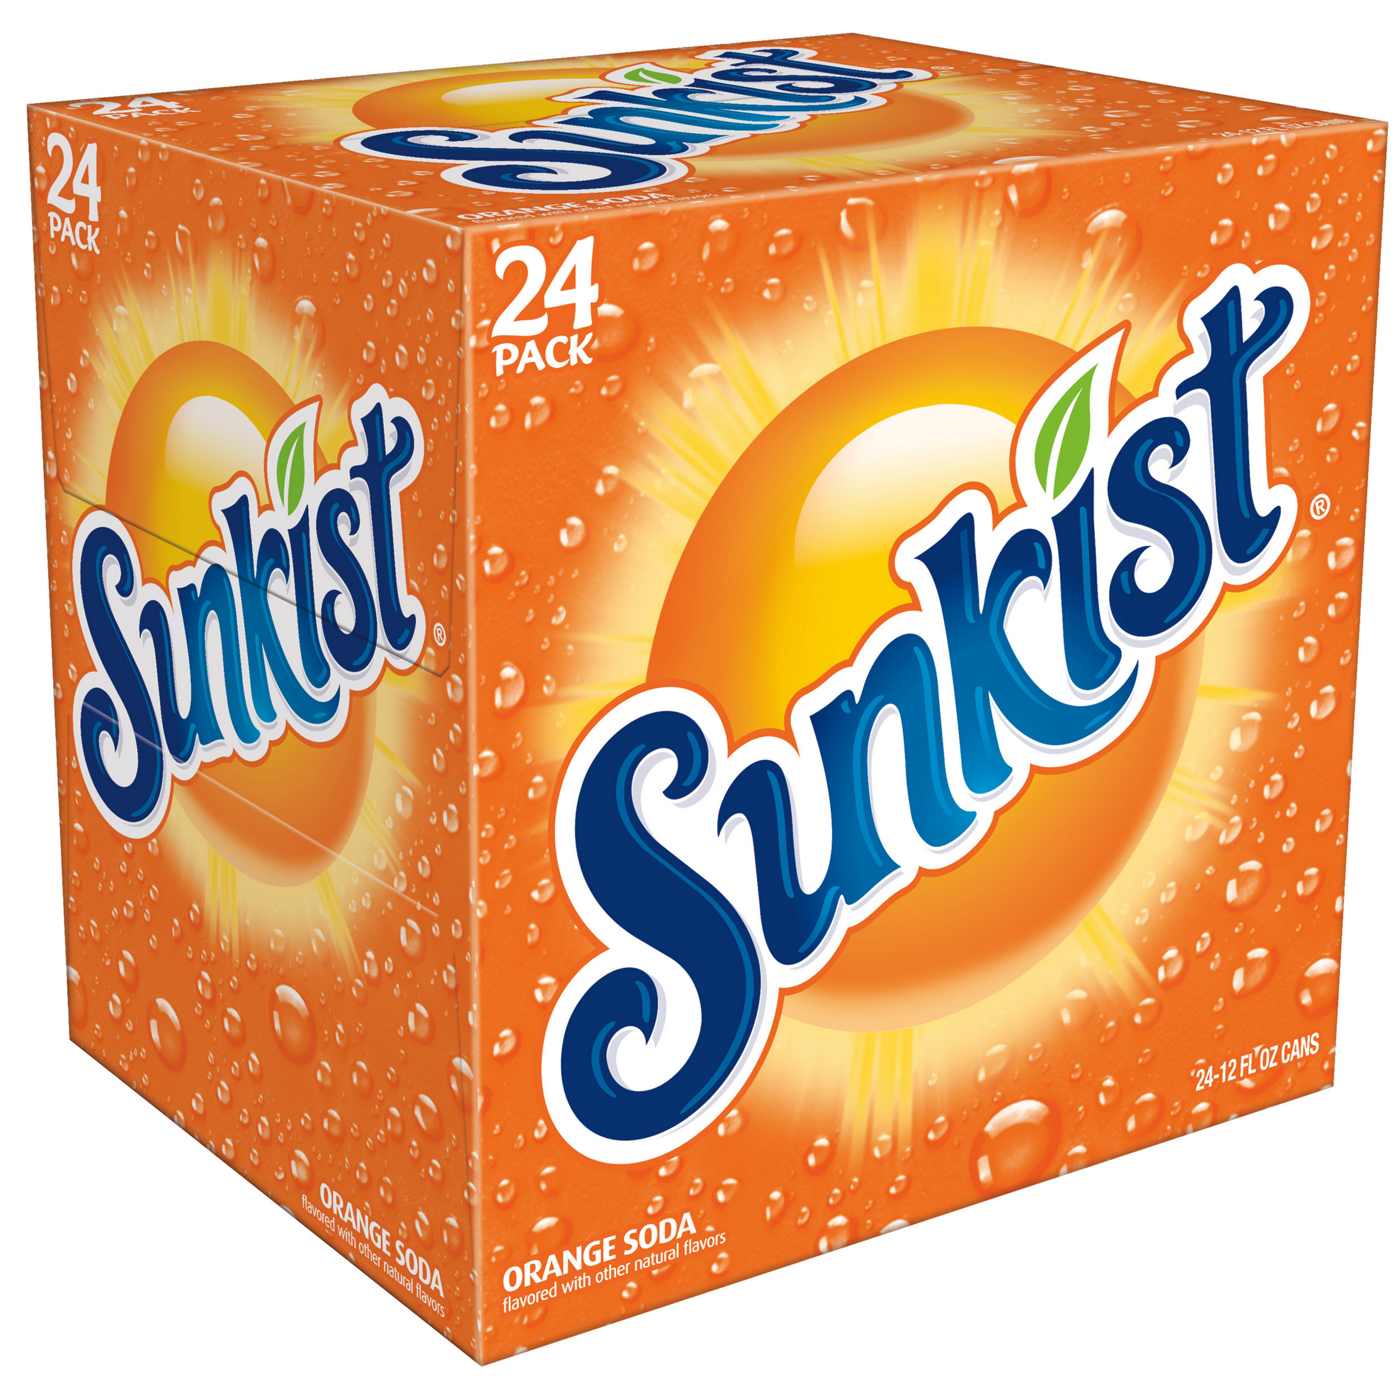 Sunkist Orange Soda; image 1 of 3